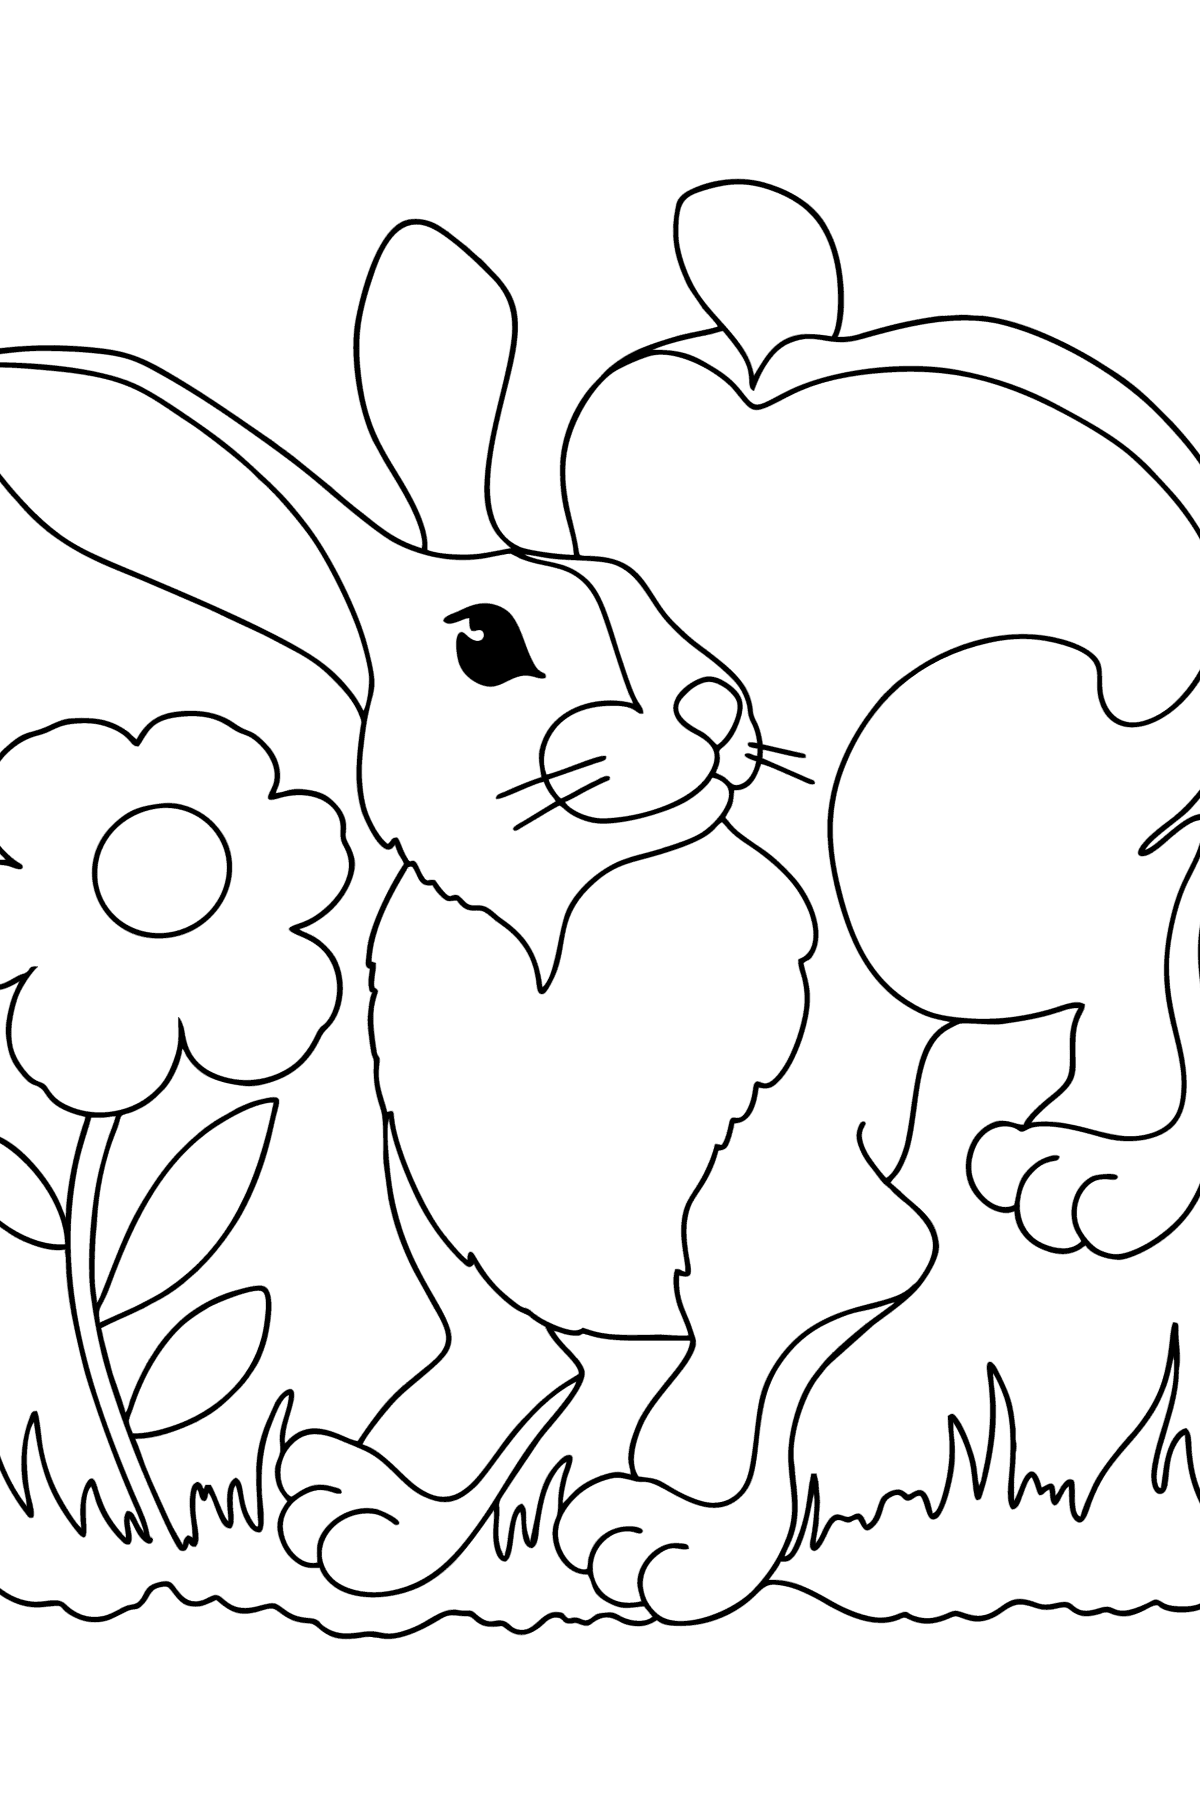 Desenho para colorir do coelhinho feliz - Imagens para Colorir para Crianças